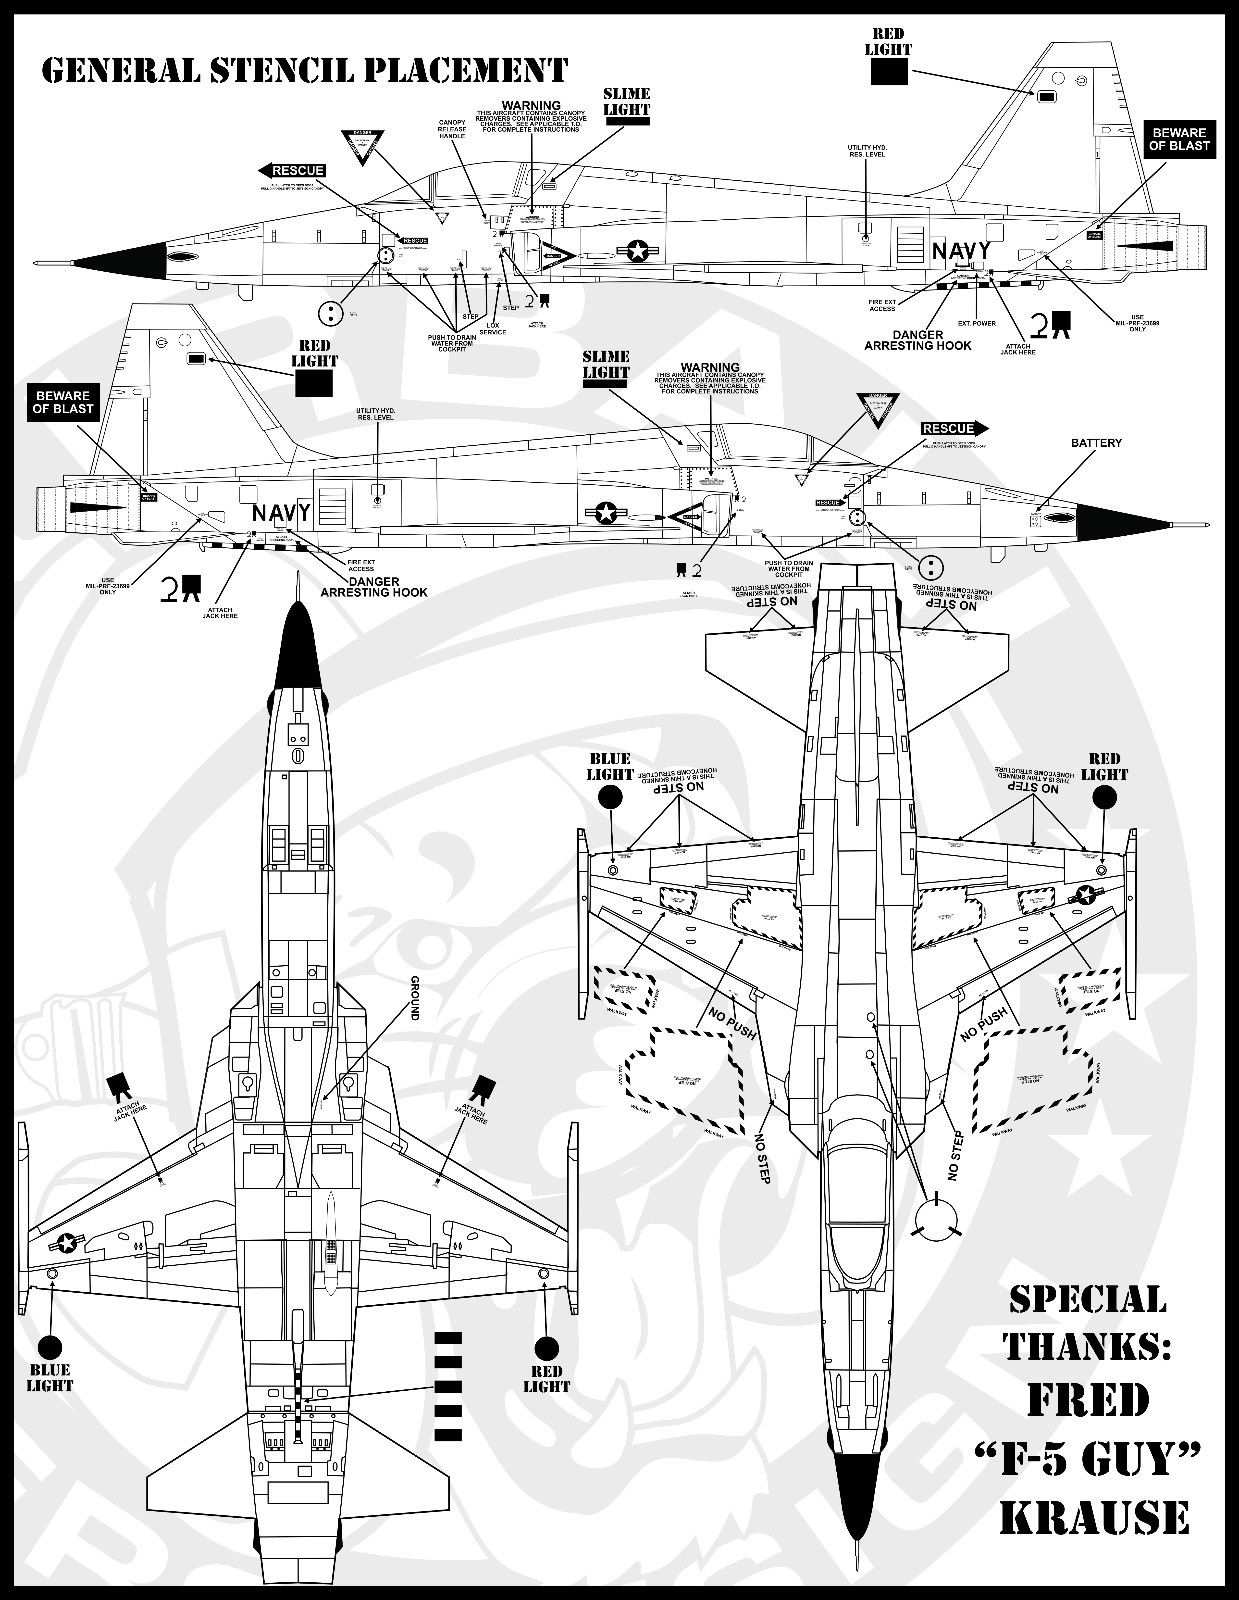 1/48 F-5N/F 虎II战斗机"VFC-111日落中队, 假想敌" - 点击图像关闭